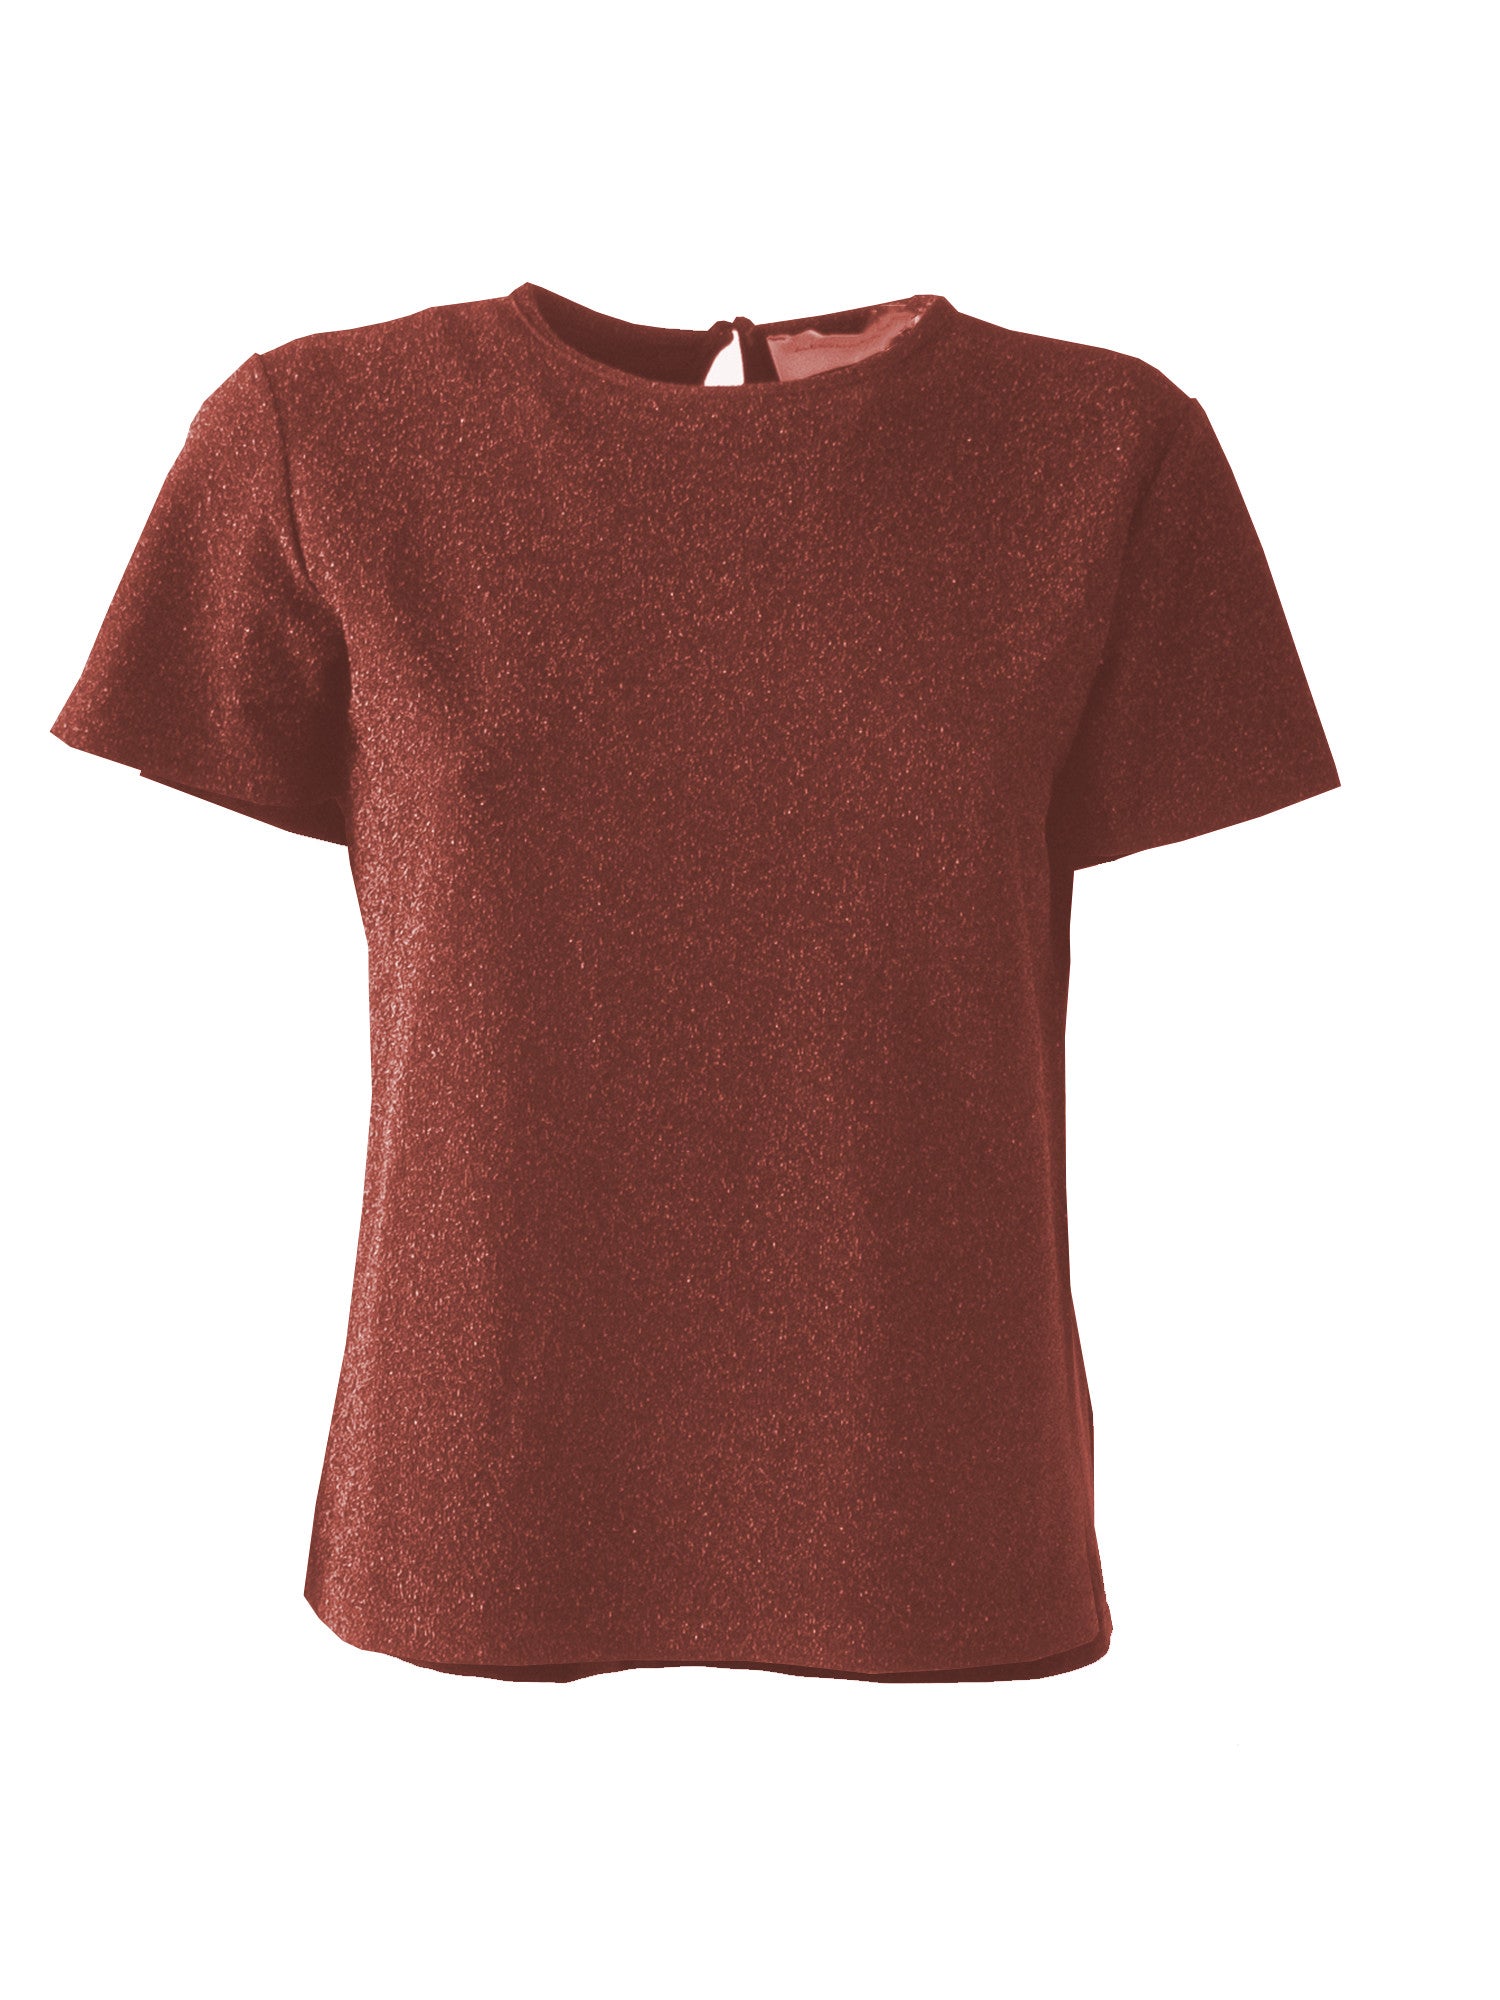 CARMEN - bronze lurex t-shirt